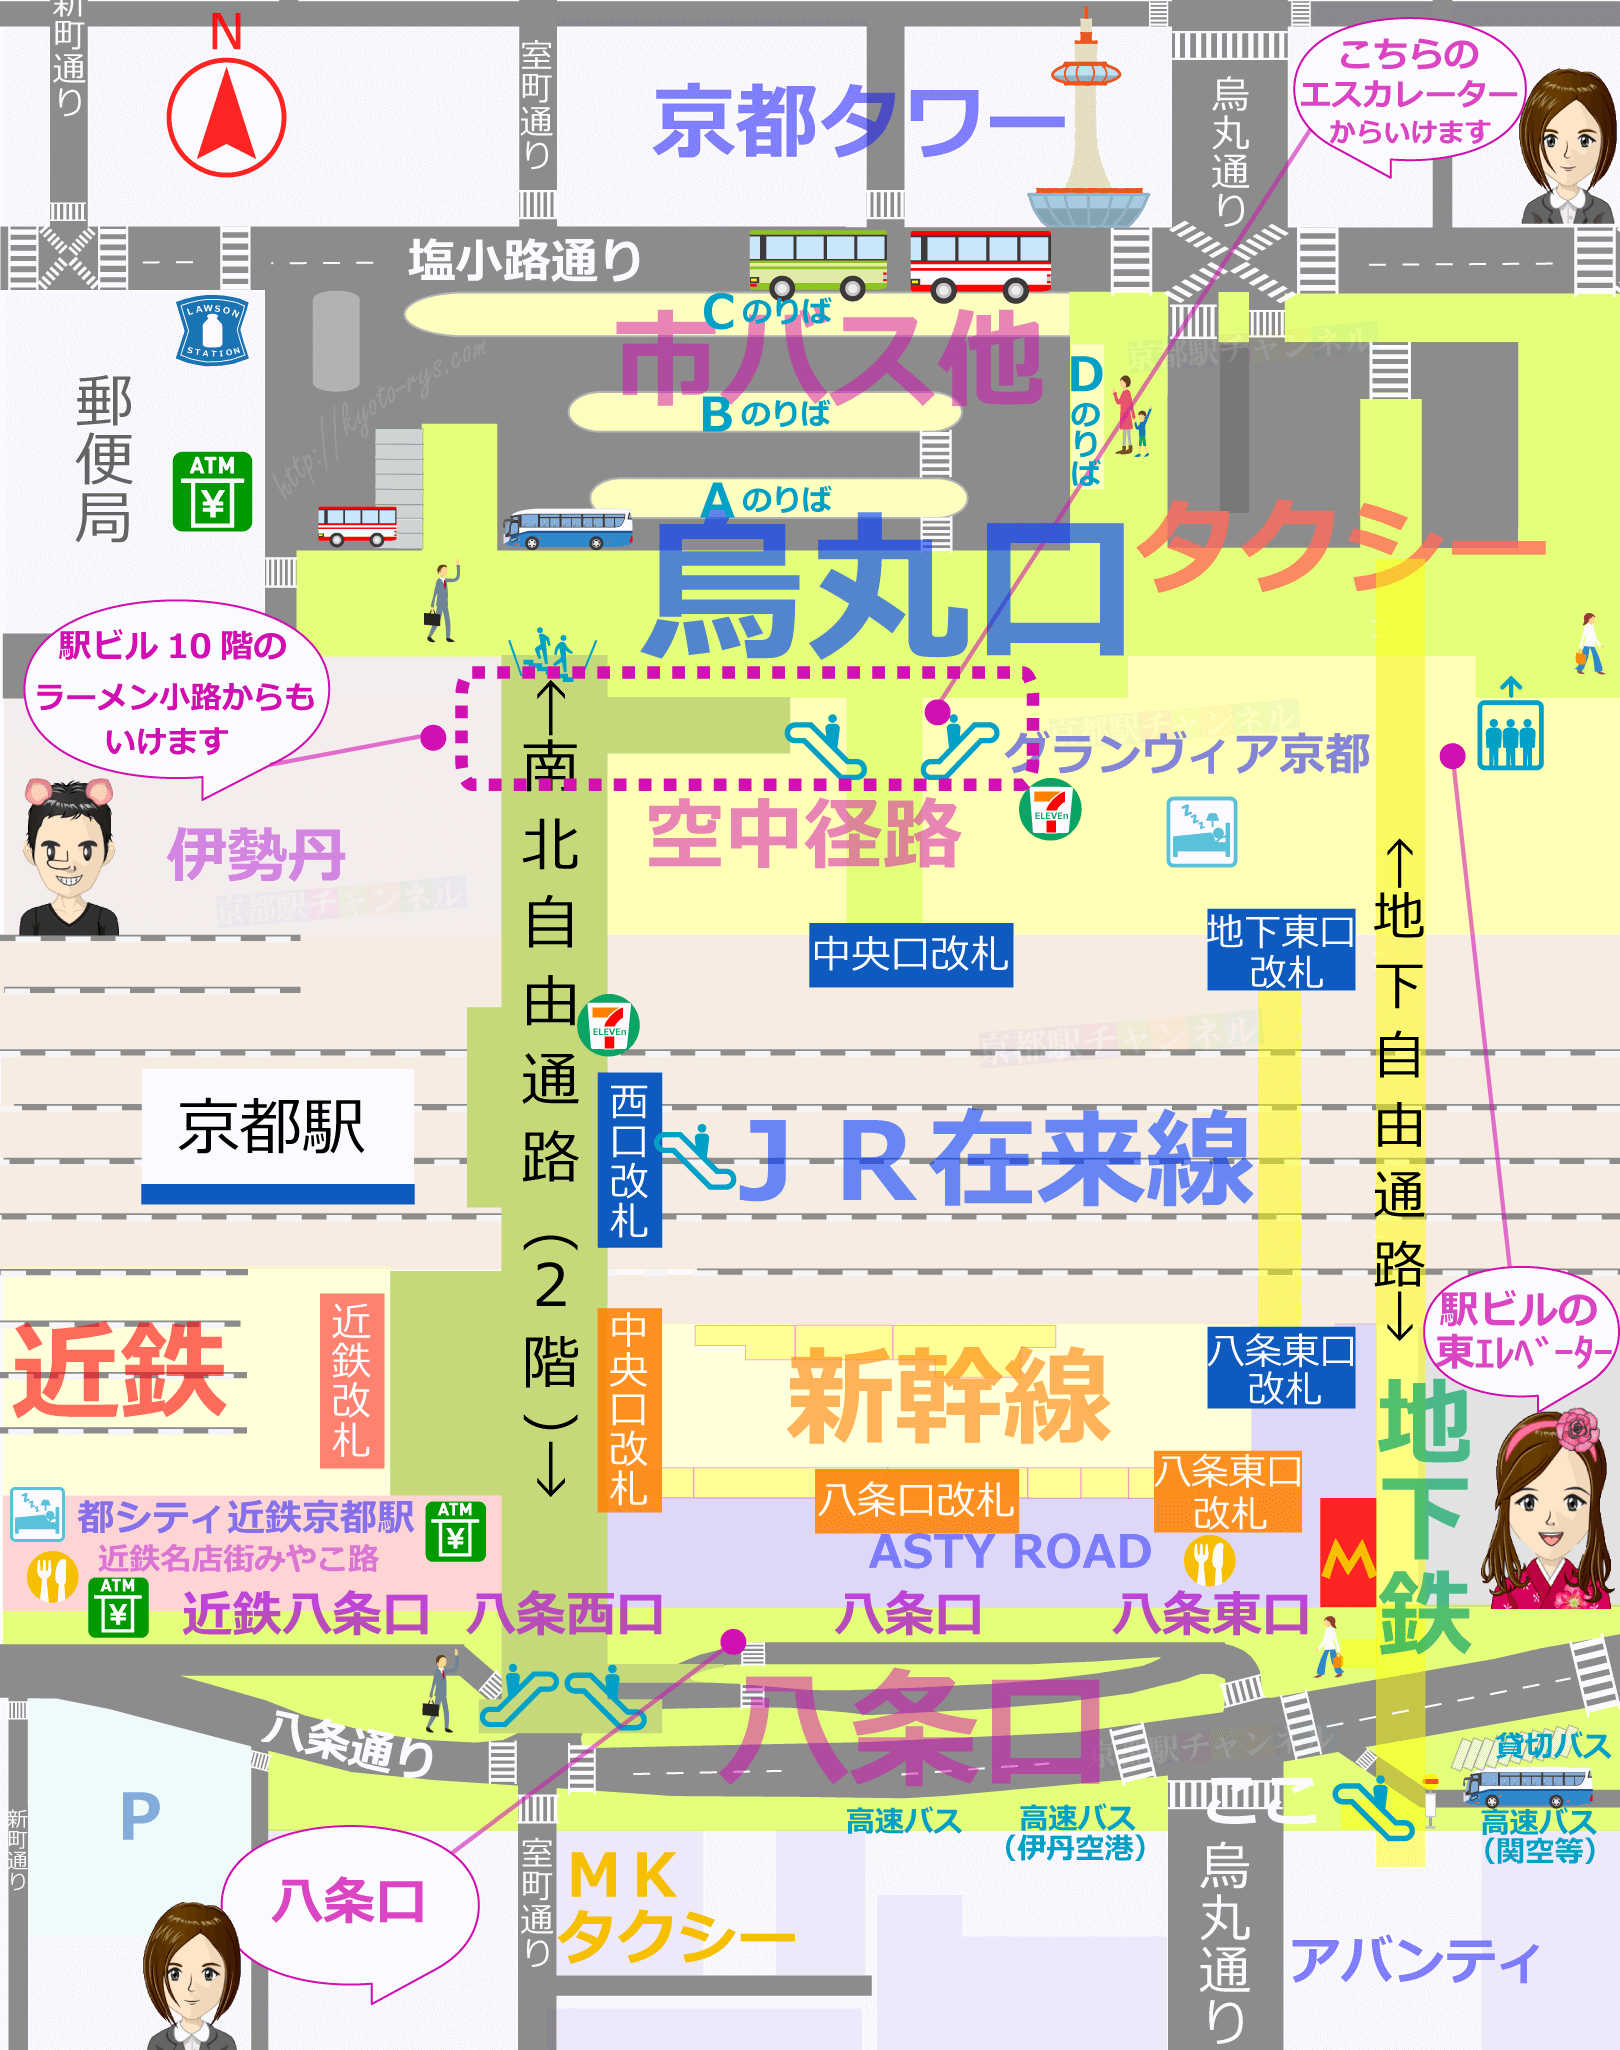 京都駅の全体図と空中経路のマップ